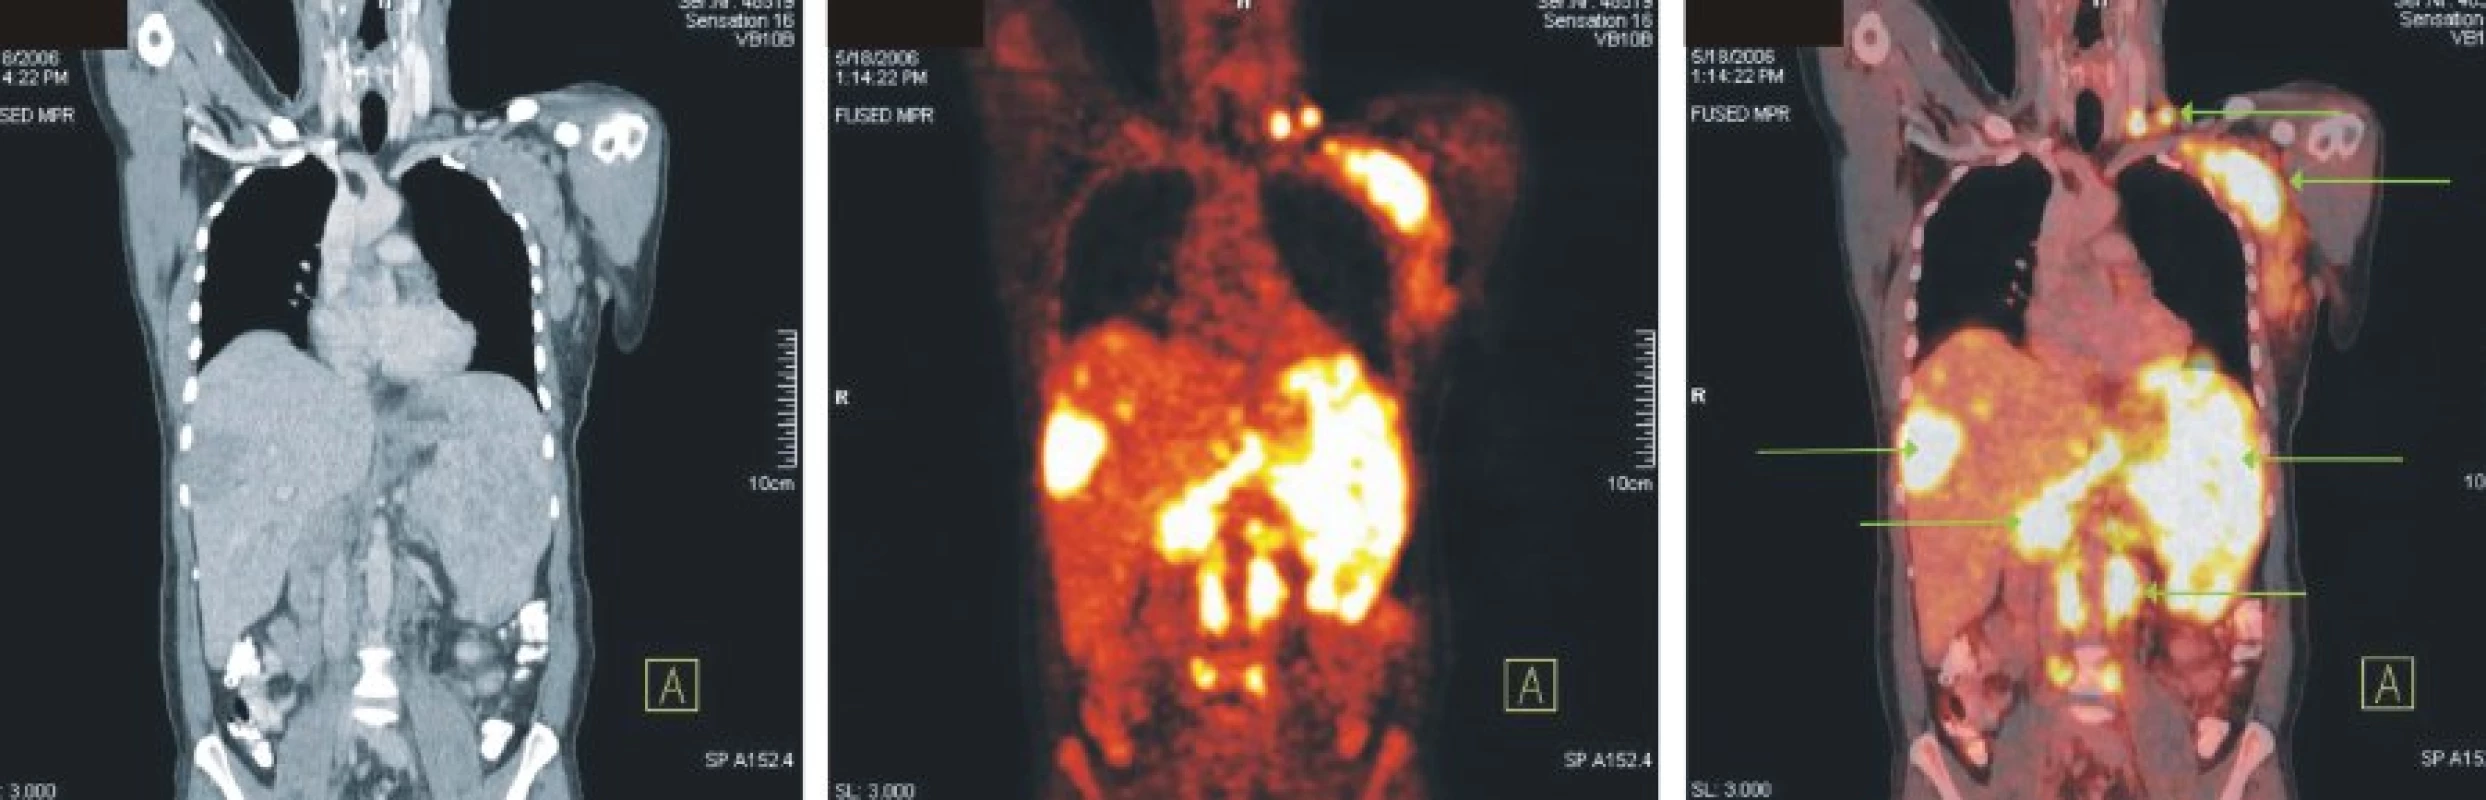 Snímky výpočetní tomografie (CT), pozitronové emisní tomografie (PET) a PET/CT u nemocného s difuzním B-velkobuněčným lymfomem. Zvýšená akumulace FDG v lymfatických uzlinách v levém nadklíčku, v paketu uzlin levé axily, paraaortálně a v mnohočetných ložiscích ve výrazně zvětšené slezině a játrech.